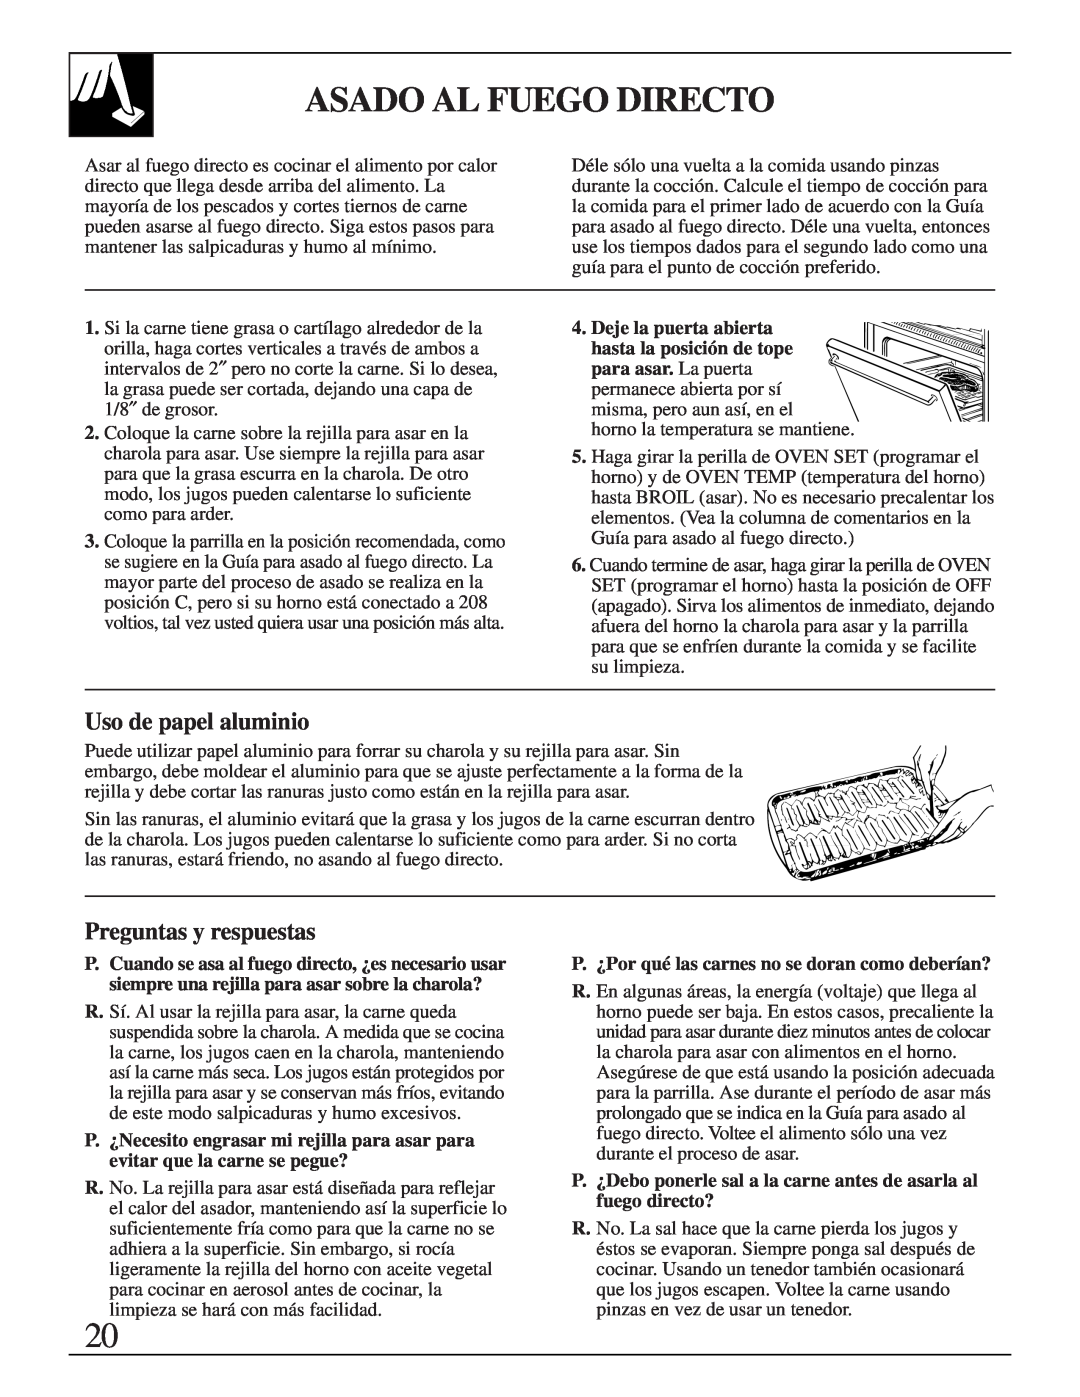 GE JMS10 warranty Asado Al Fuego Directo, Uso de papel aluminio, Preguntas y respuestas 